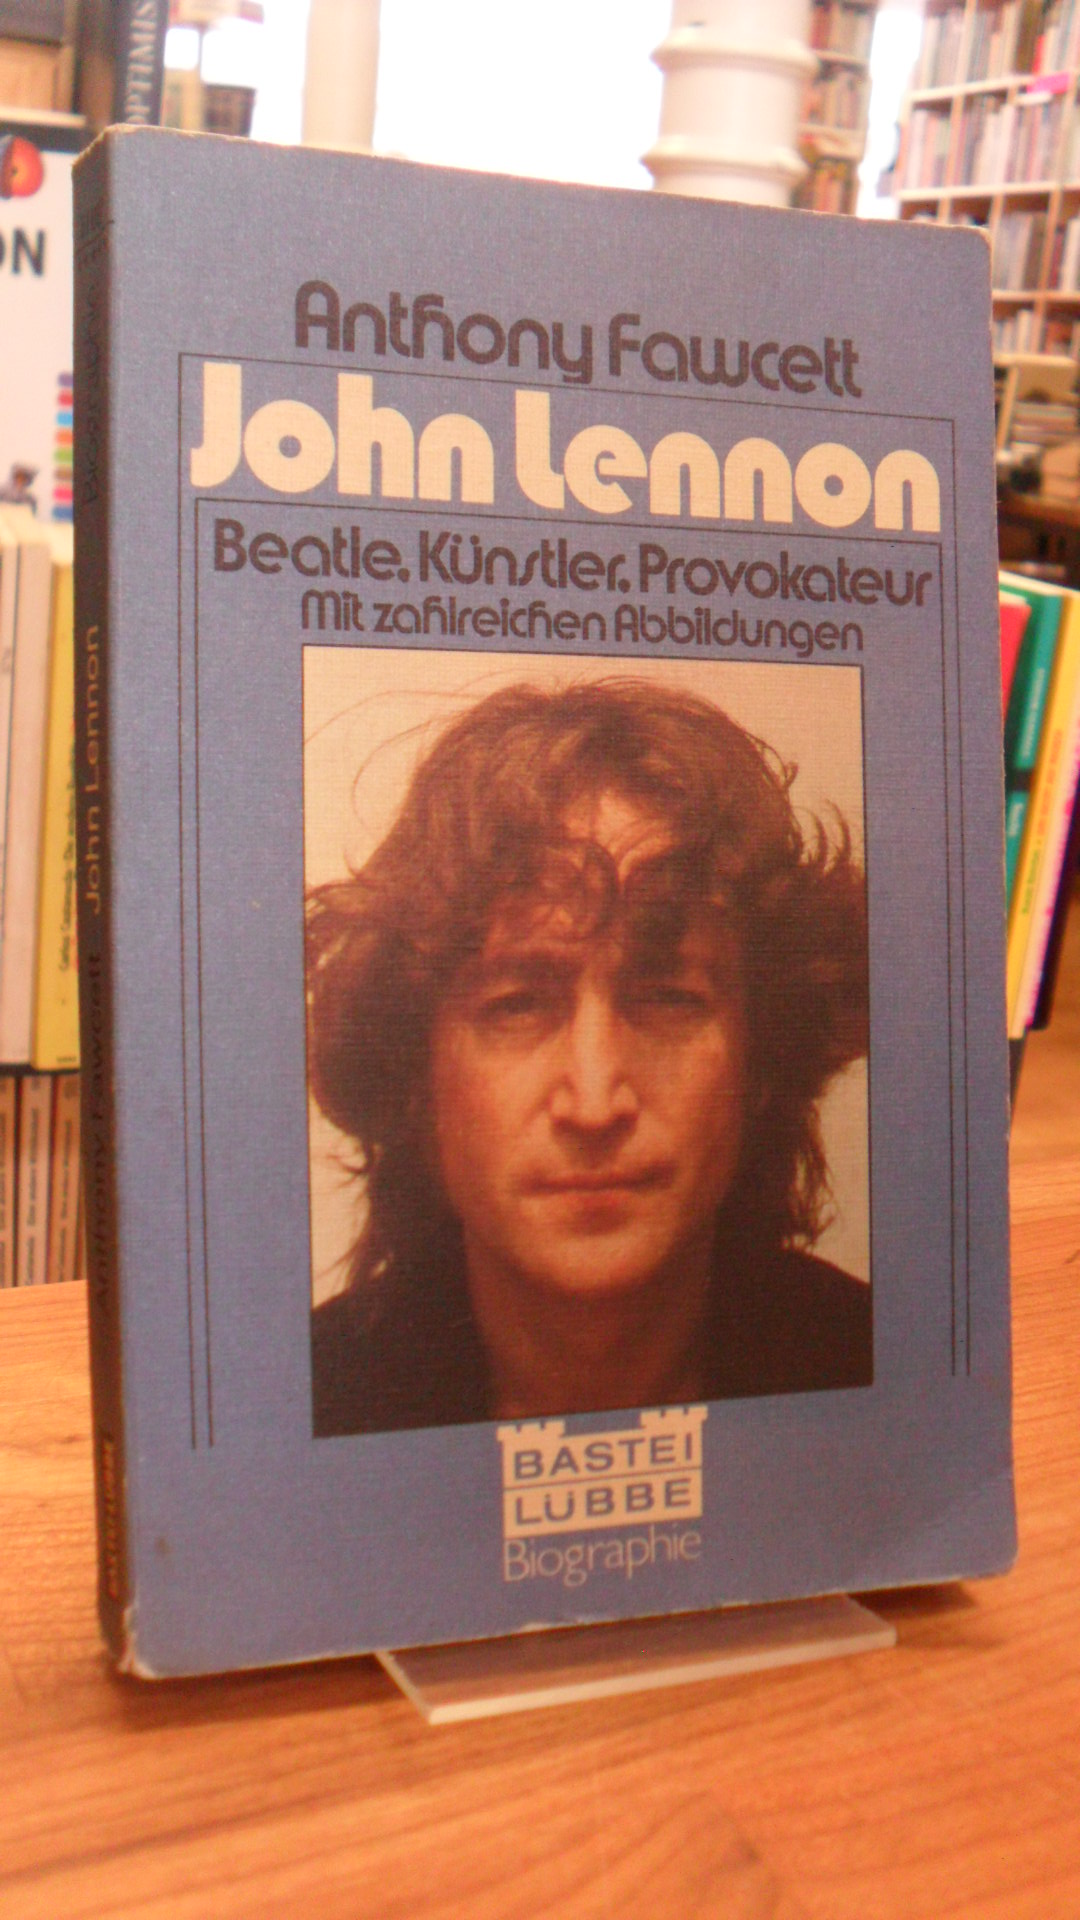 John Lennon - Beatle, Künstler, Provokateur